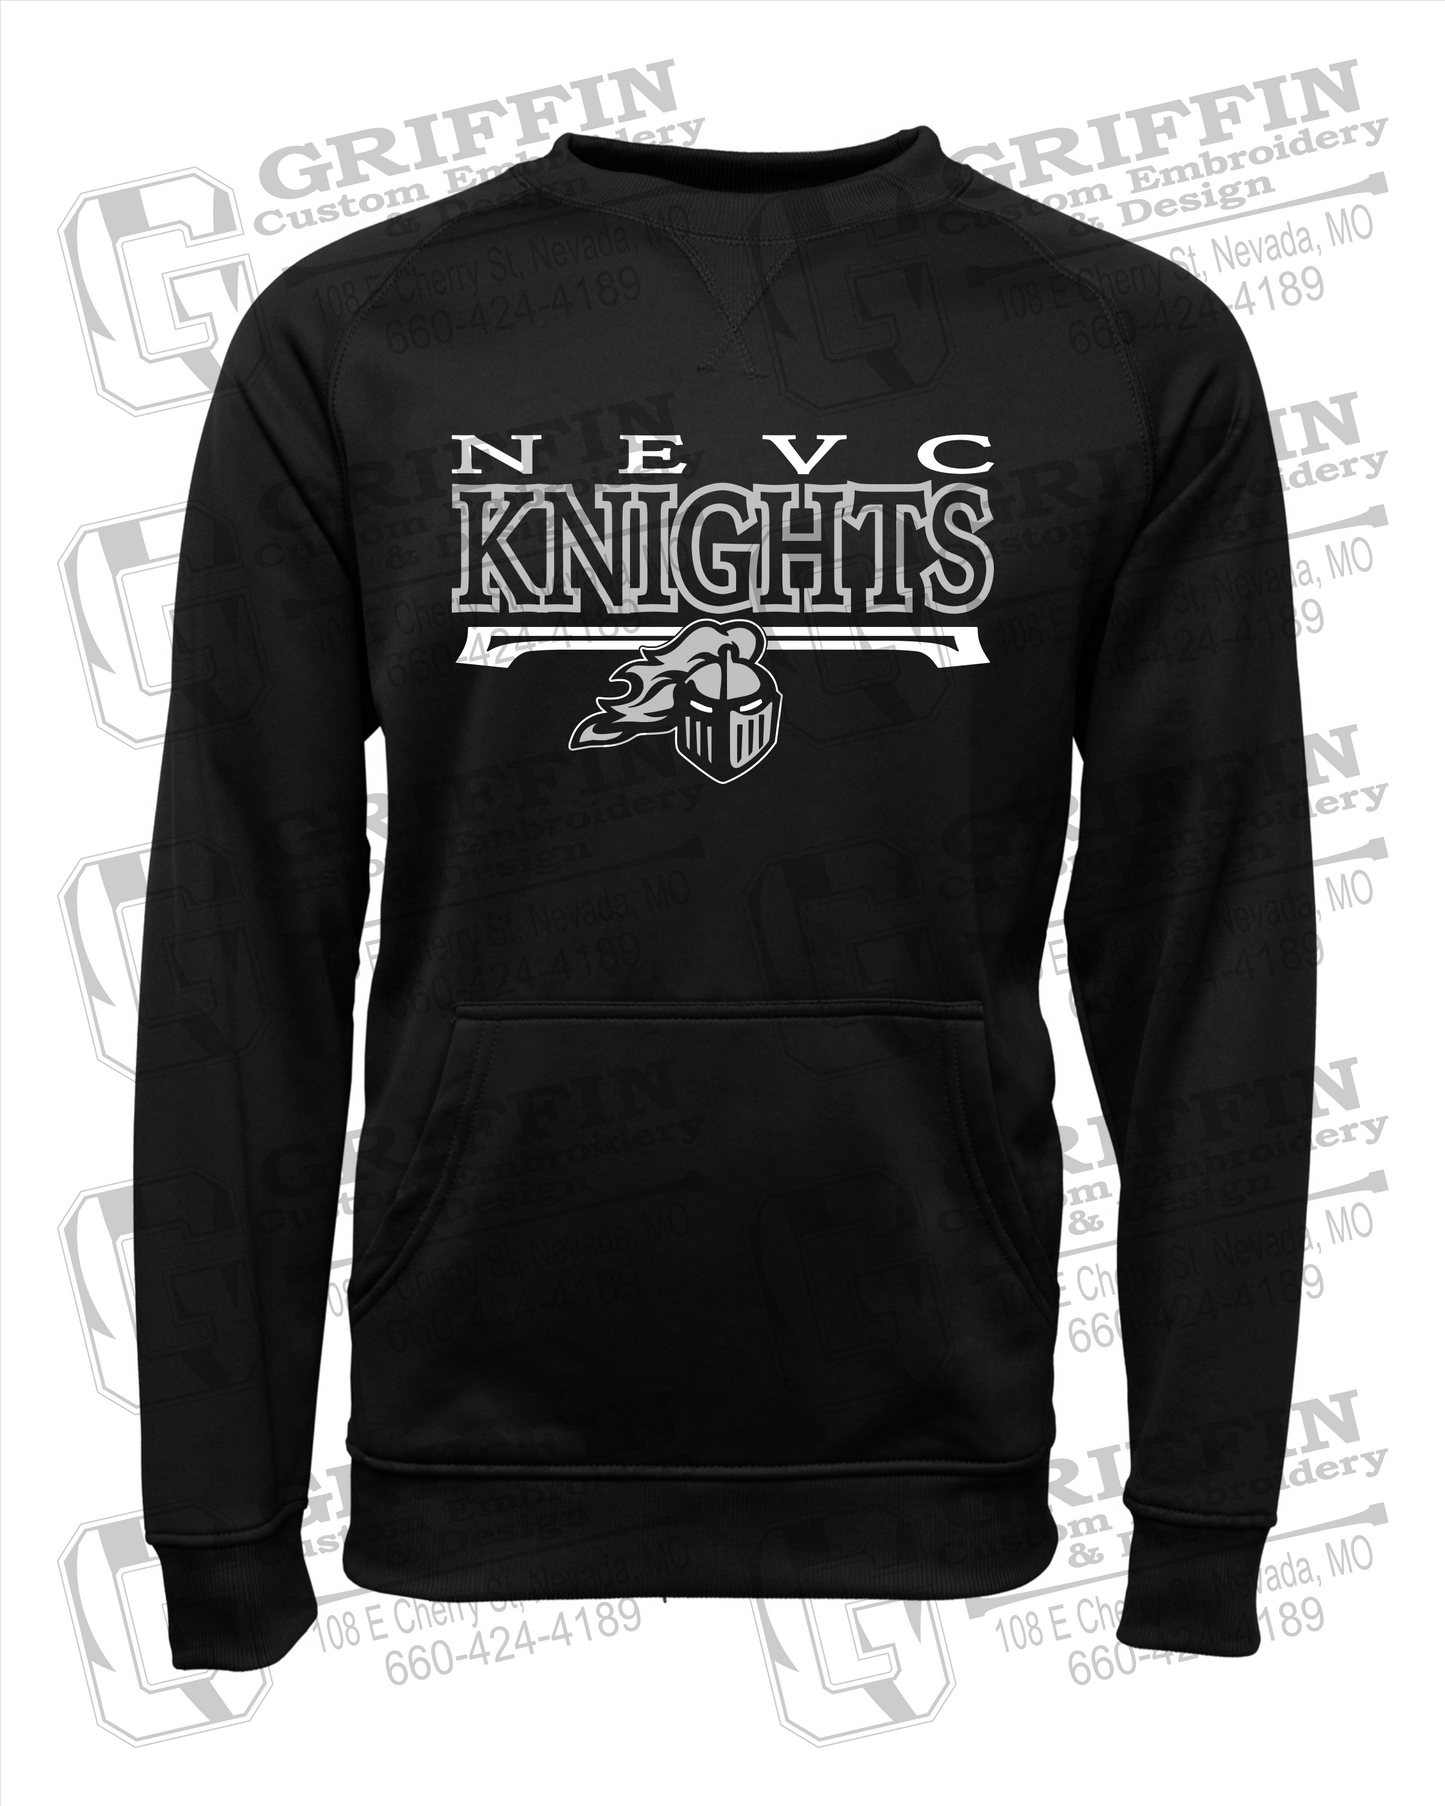 NEVC Knights 23-A Youth Sweatshirt